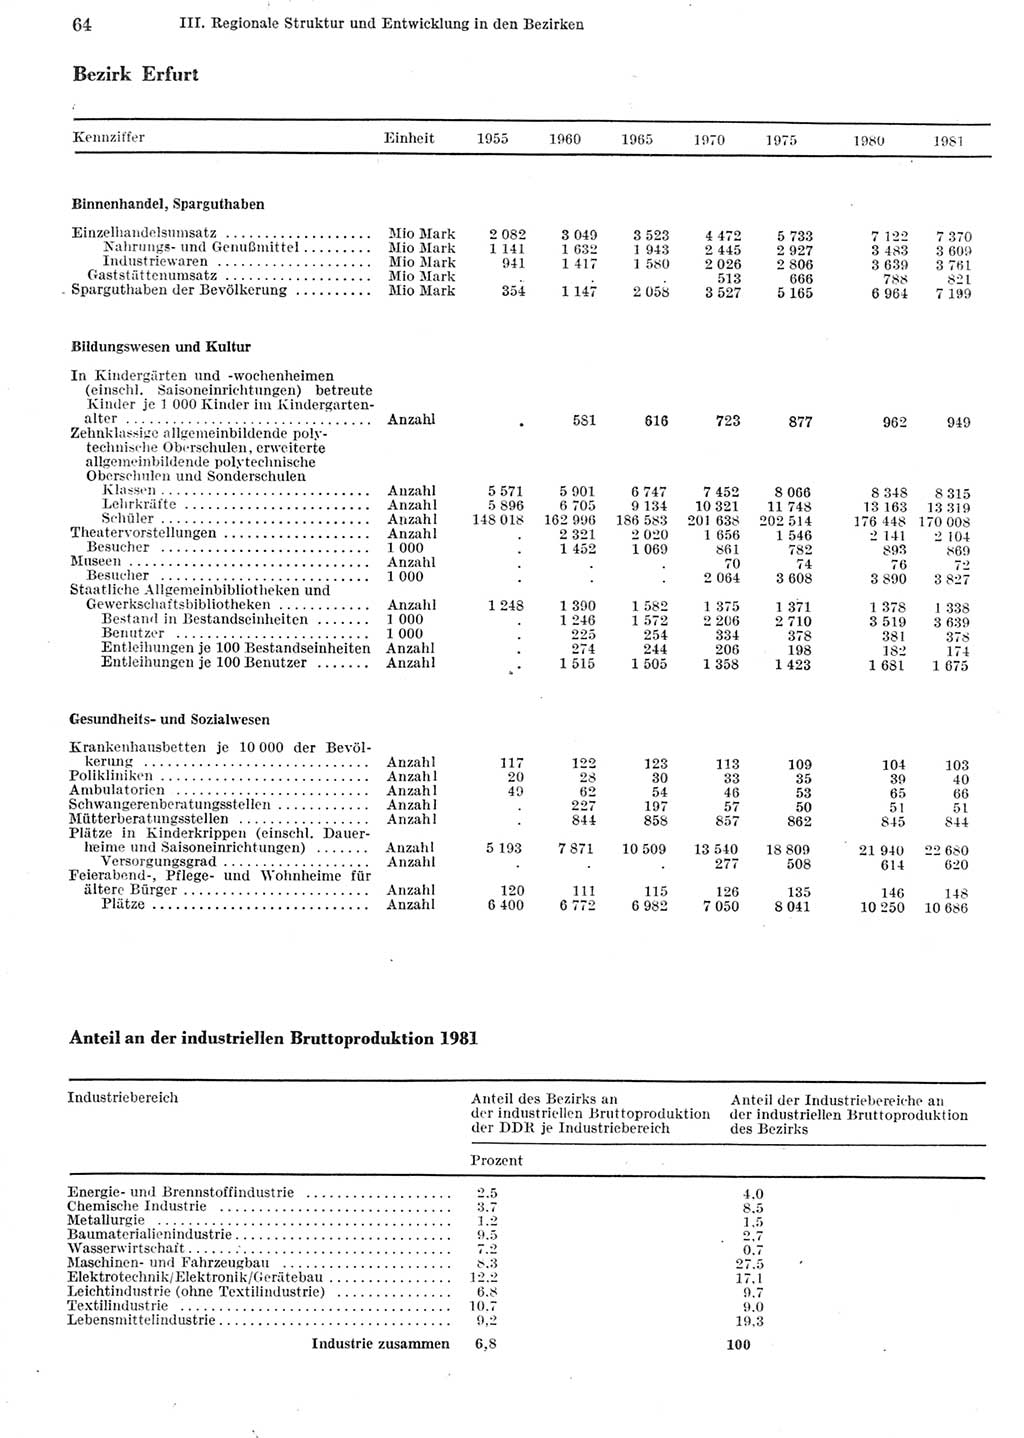 Statistisches Jahrbuch der Deutschen Demokratischen Republik (DDR) 1982, Seite 64 (Stat. Jb. DDR 1982, S. 64)